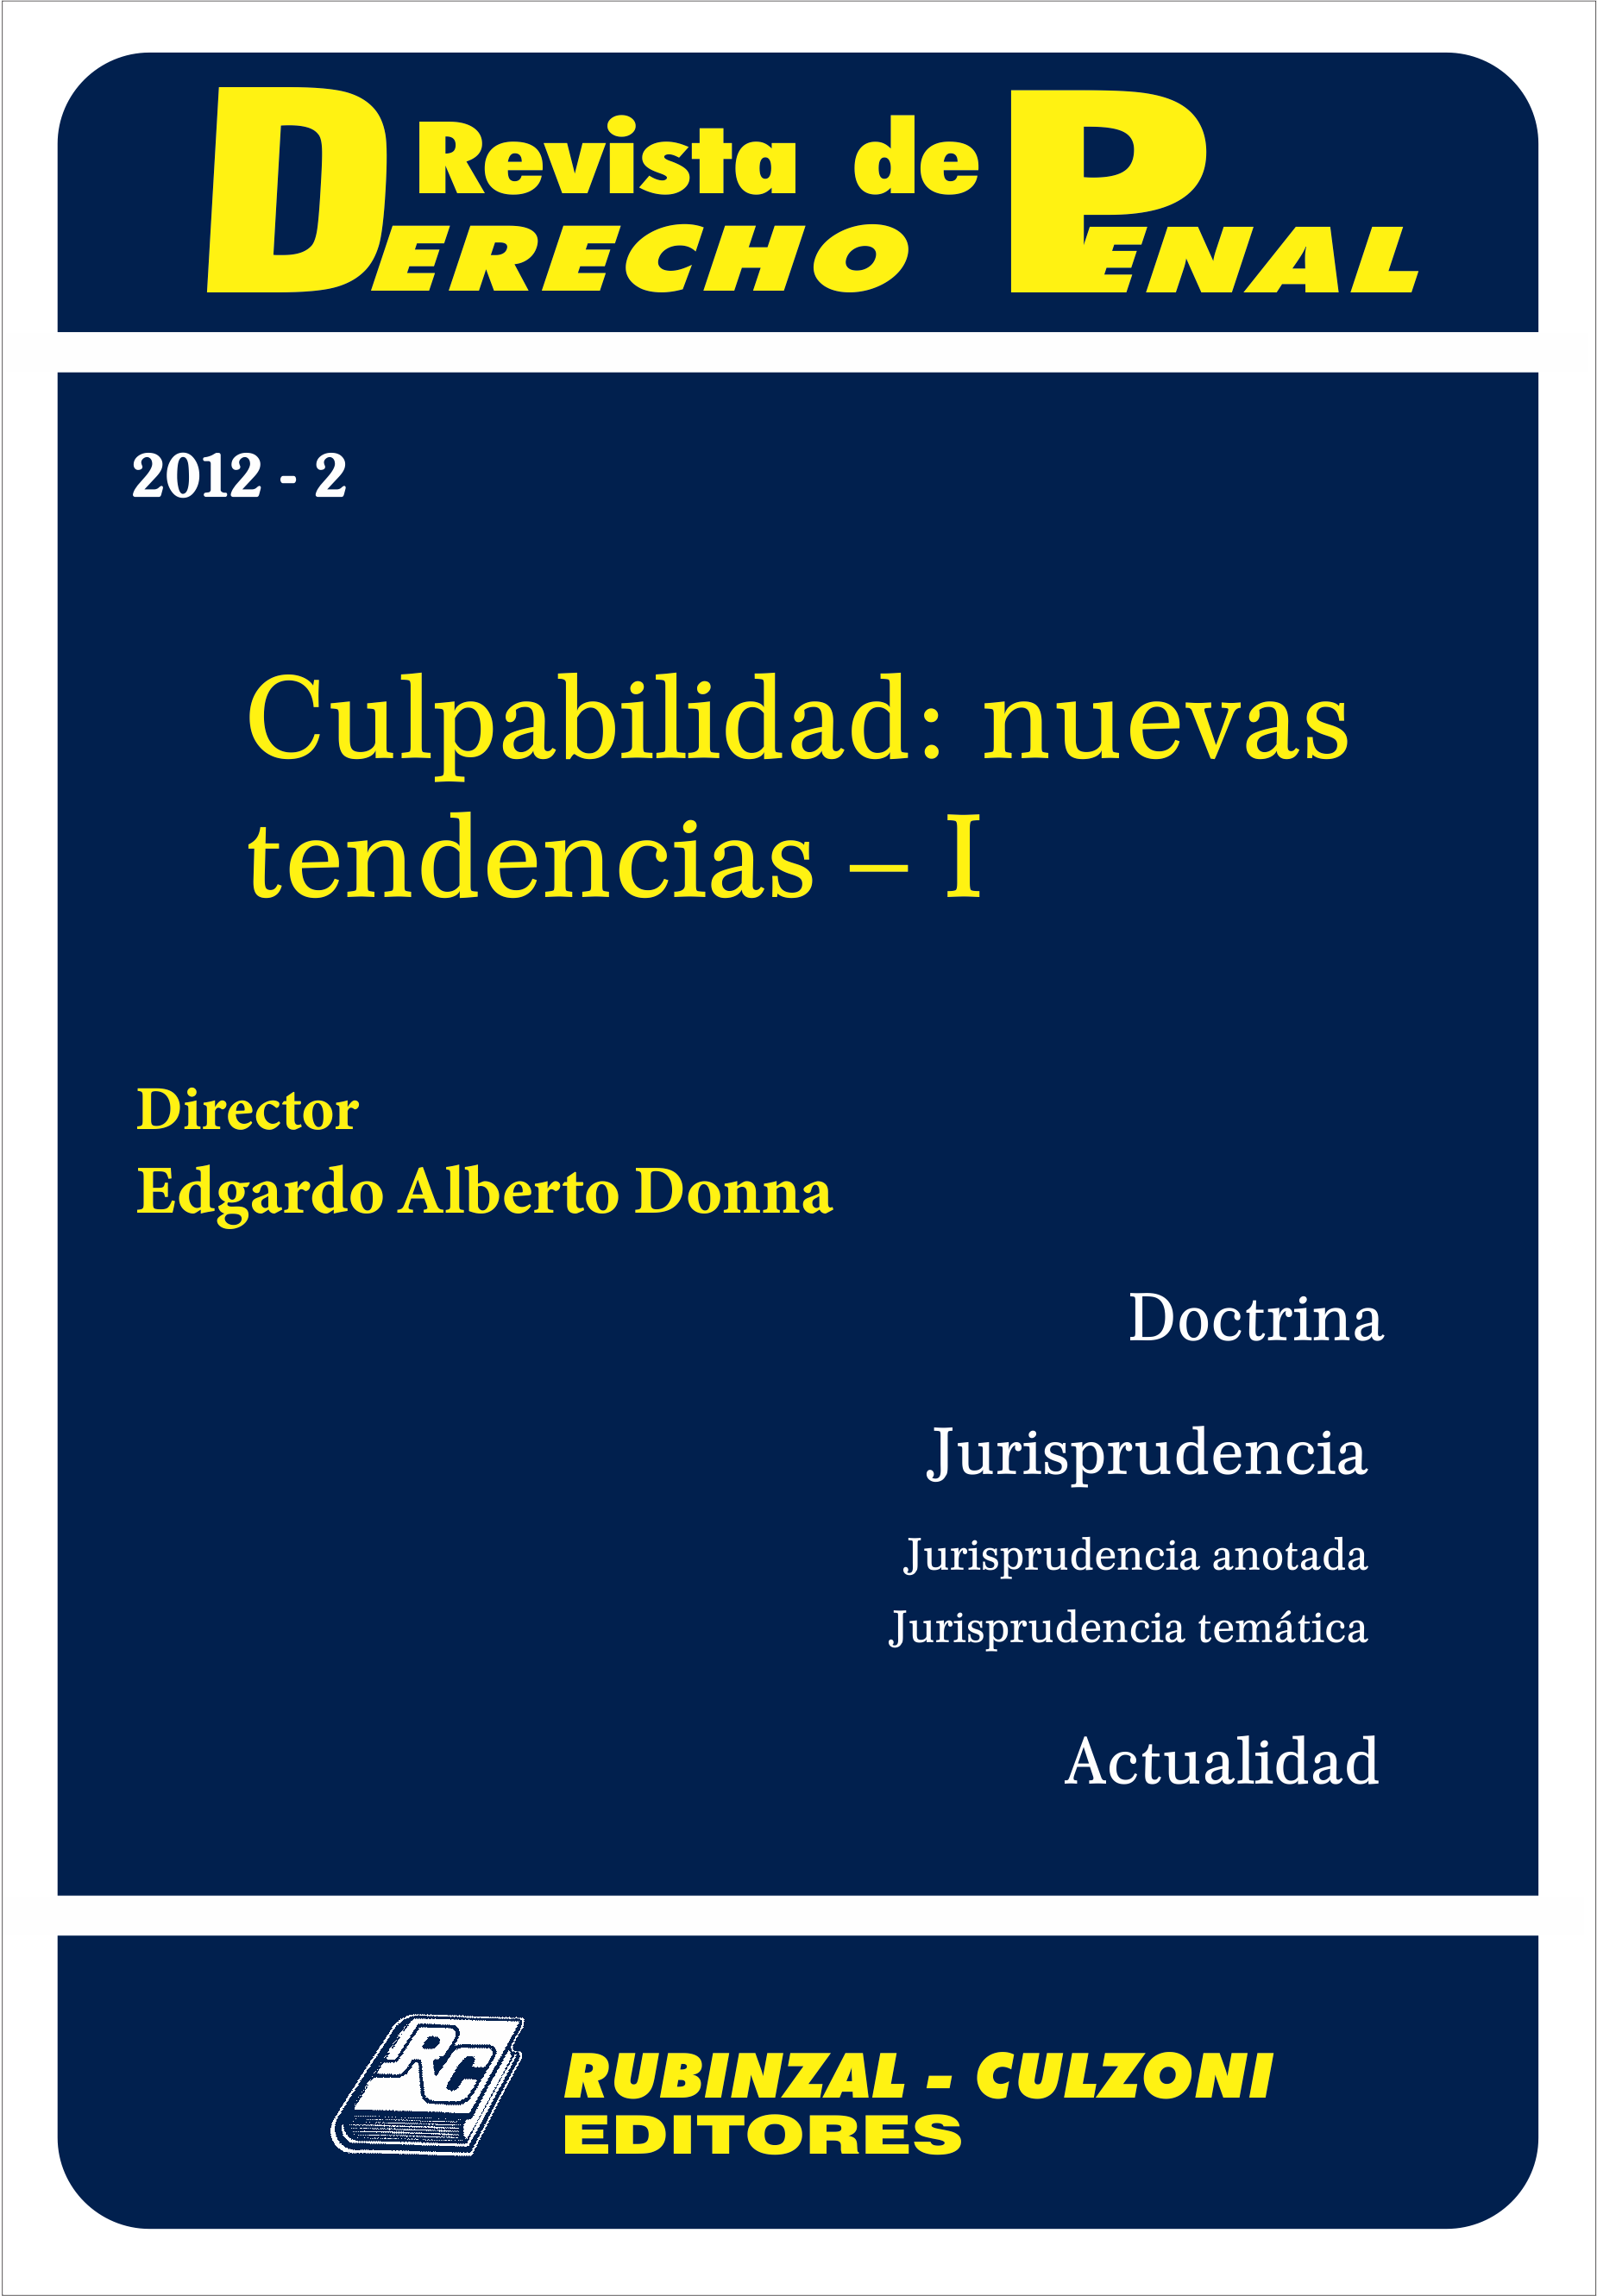 Revista de Derecho Penal - Culpabilidad: nuevas tendencias - I. [2012-2]